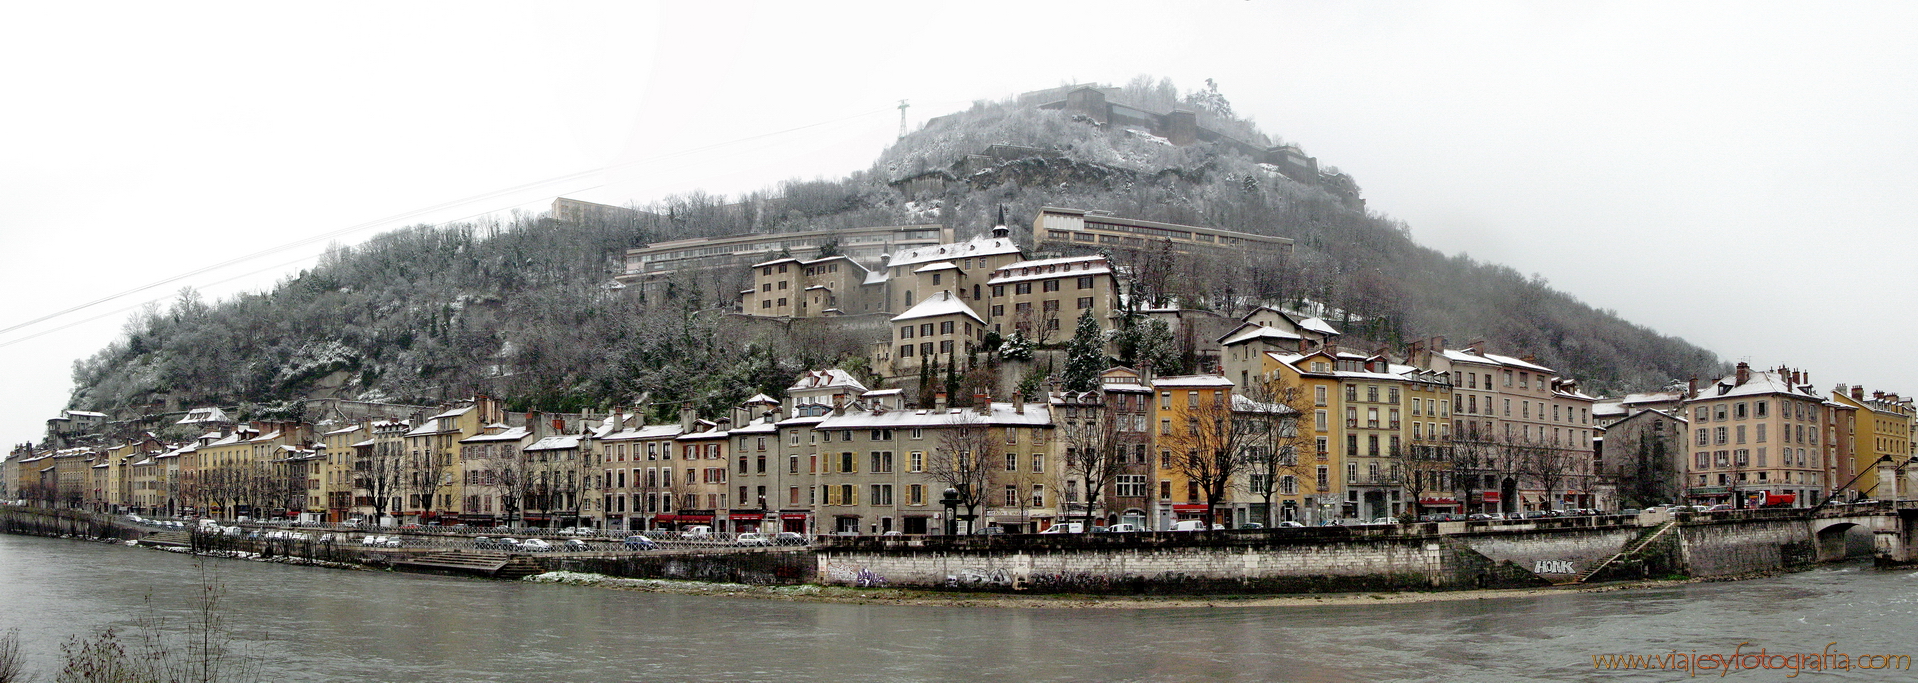 Grenoble panorama